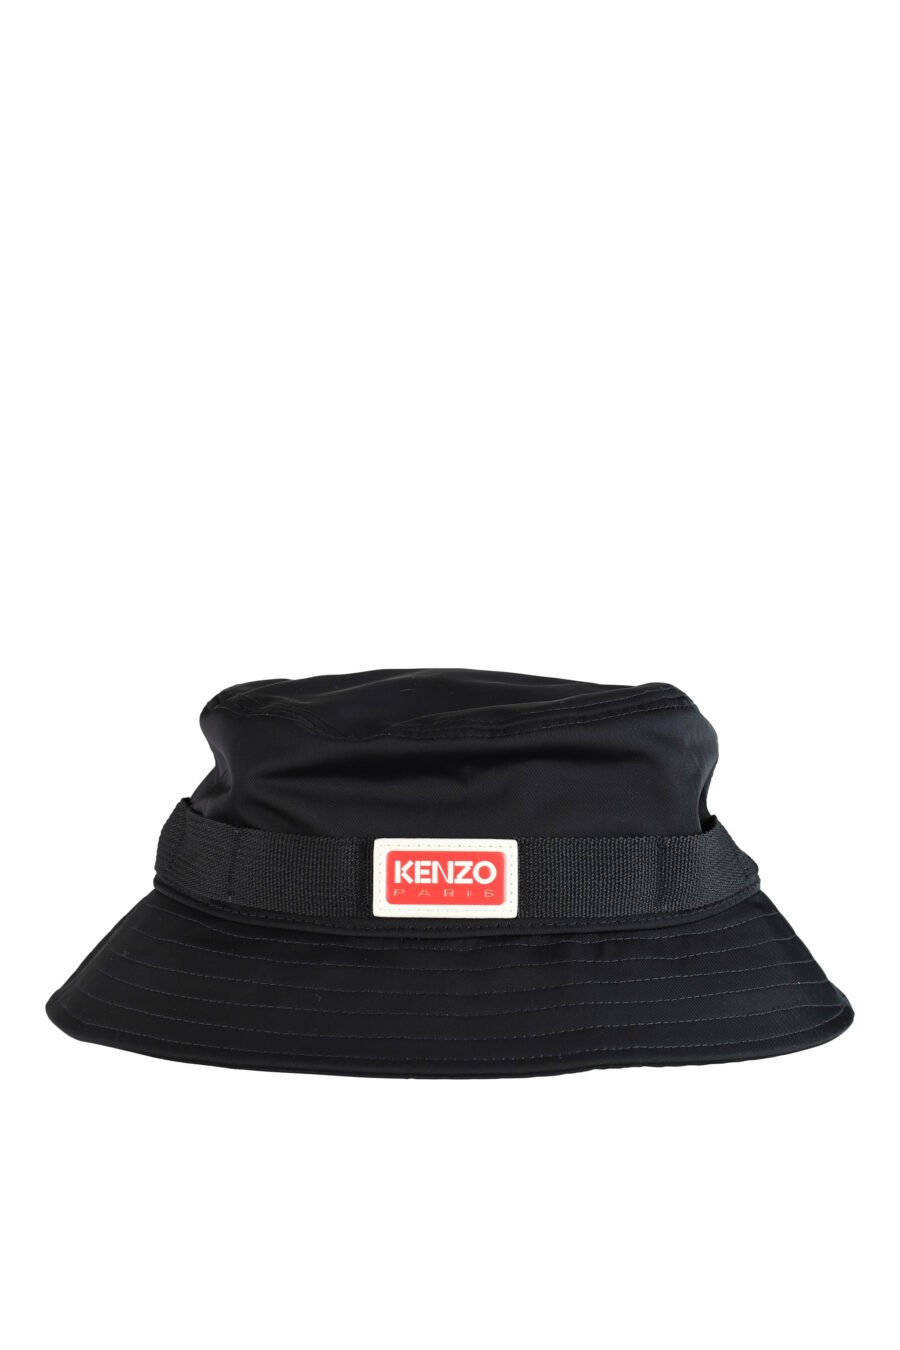 Sombrero de pescador negro con logo "paris" - IMG 0514